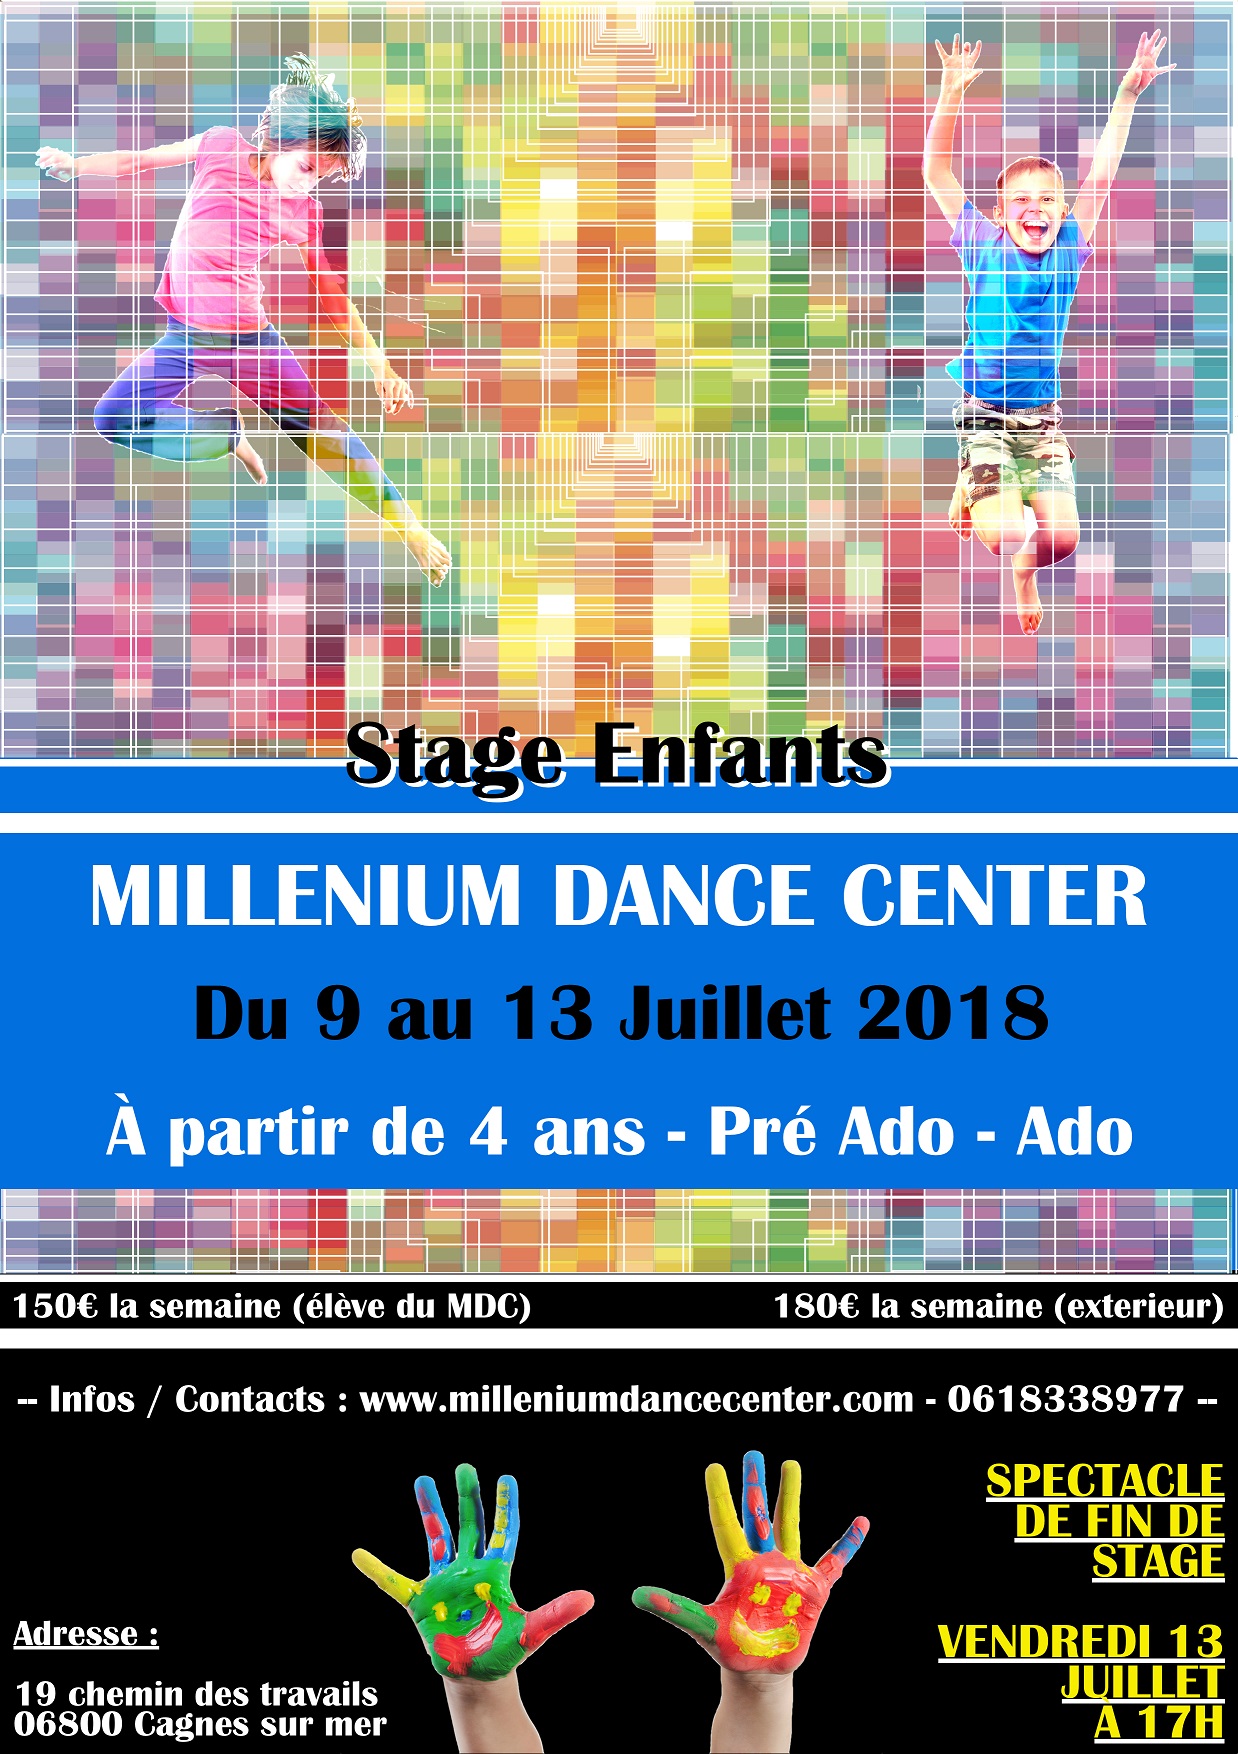 Millenium Dance Center - Stage Enfant Ete 2018